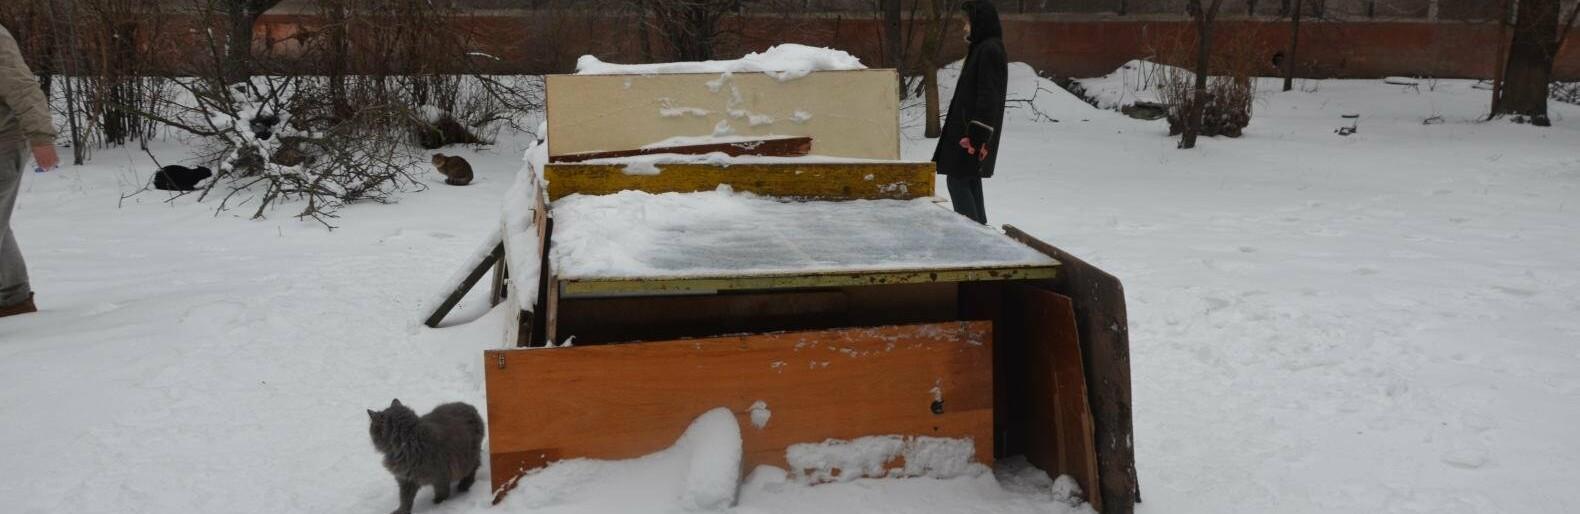 Статья Жители Мариуполя построили домик для бездомных котов из теннисного стола (фото) Утренний город. Донецк